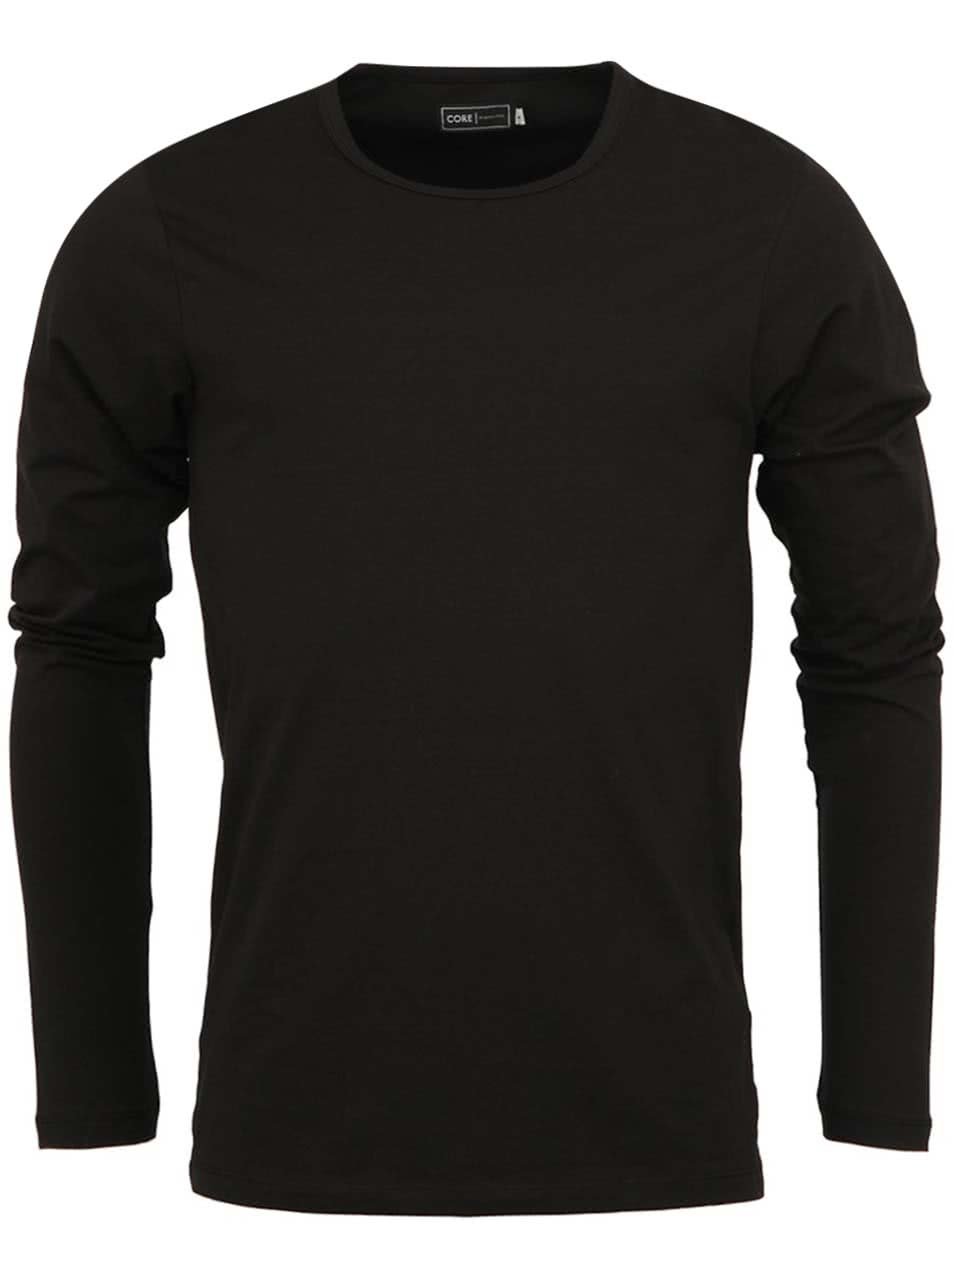 Černé jednoduché triko s dlouhým rukávem Jack & Jones Basic